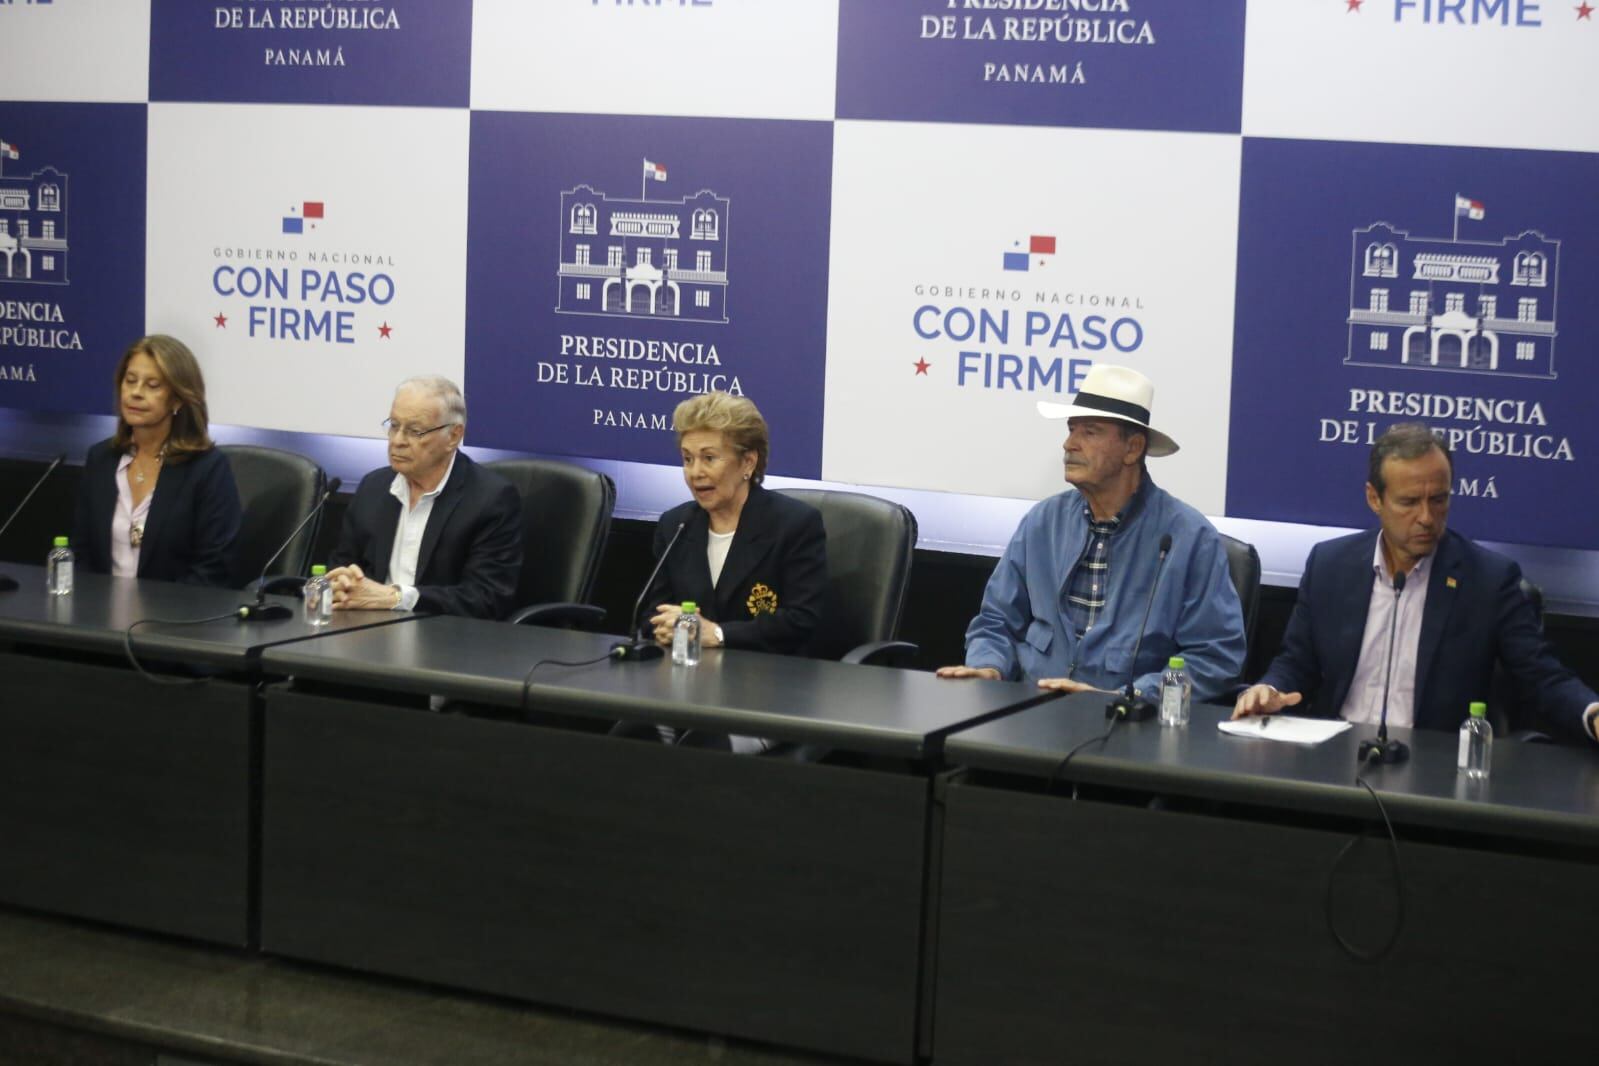 Observadores electorales durante la conferencia de prensa en el Palacio de Las Garzas. Isaac Ortega